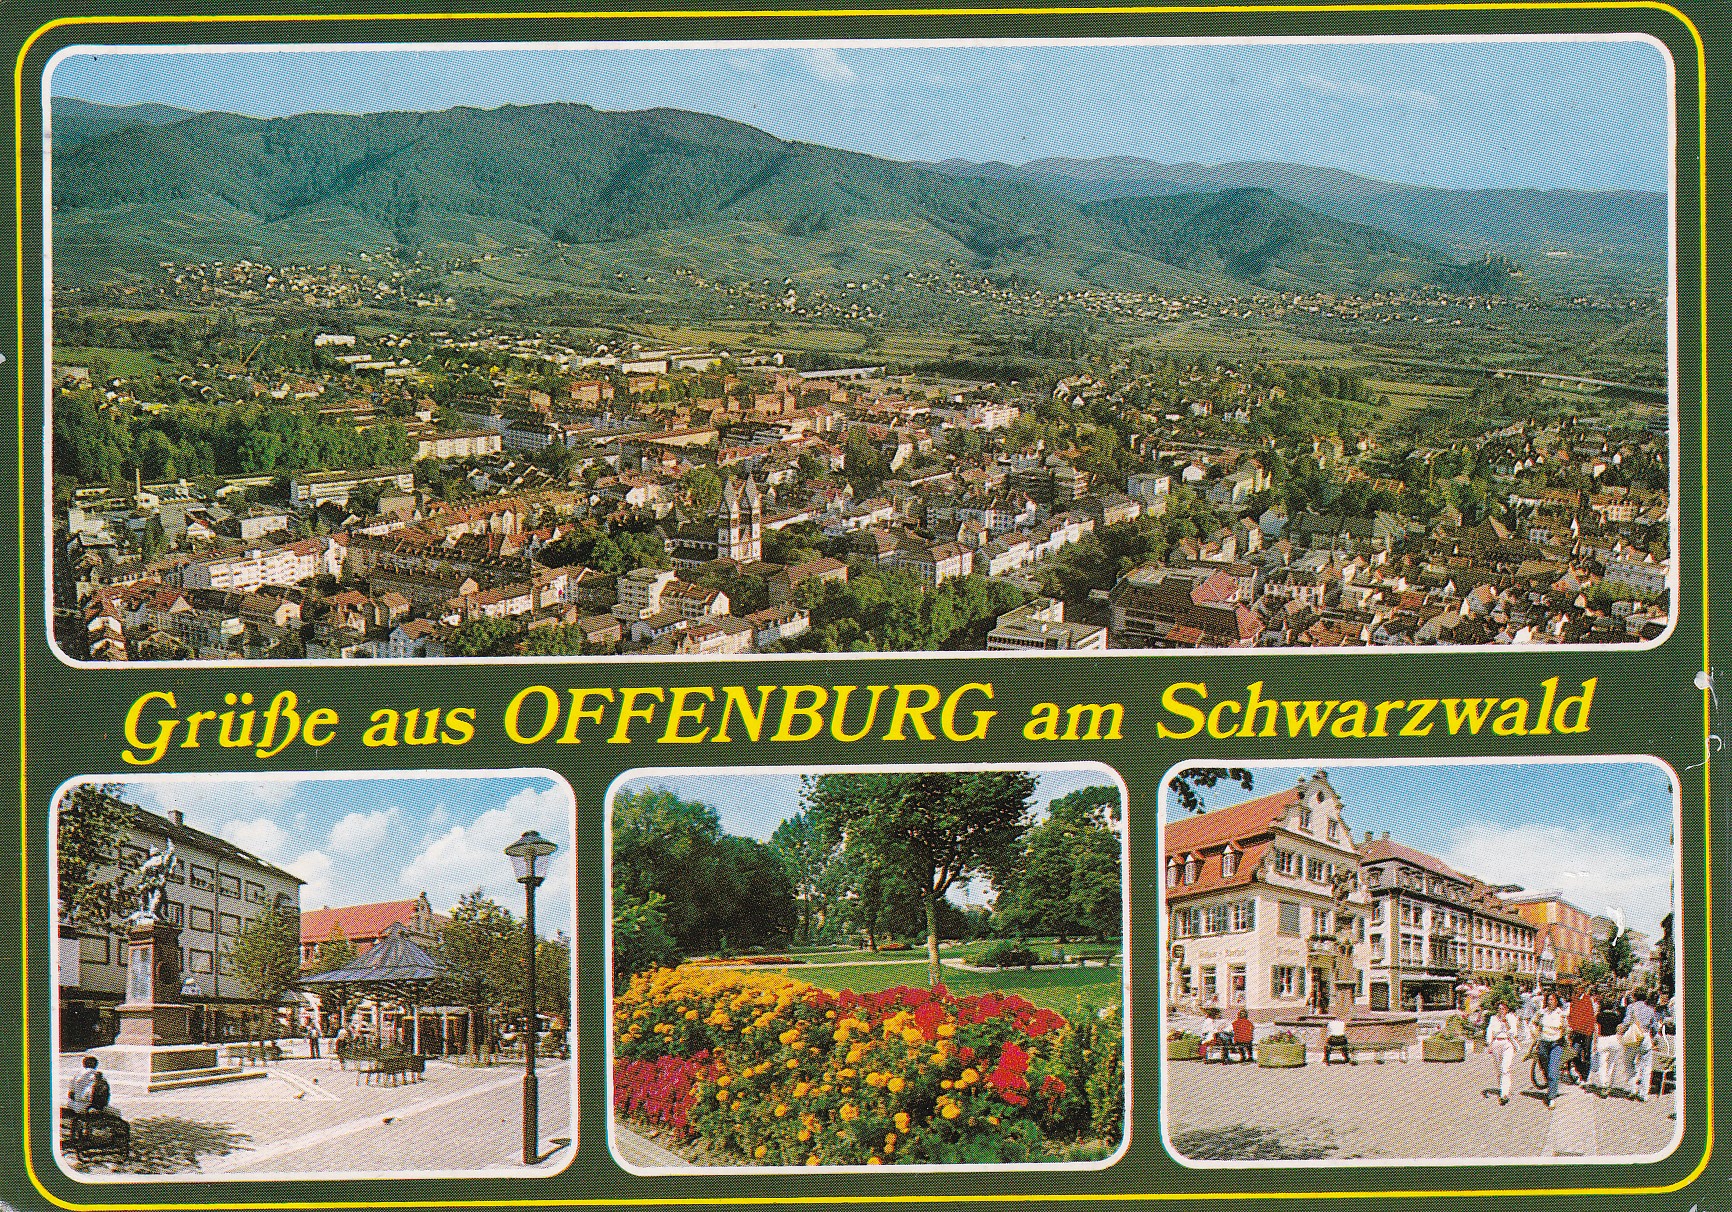 Ansichtskarte "Grüße aus Offenburg am Schwarzwald", gelaufen 1988 (Archiv des IGPP)